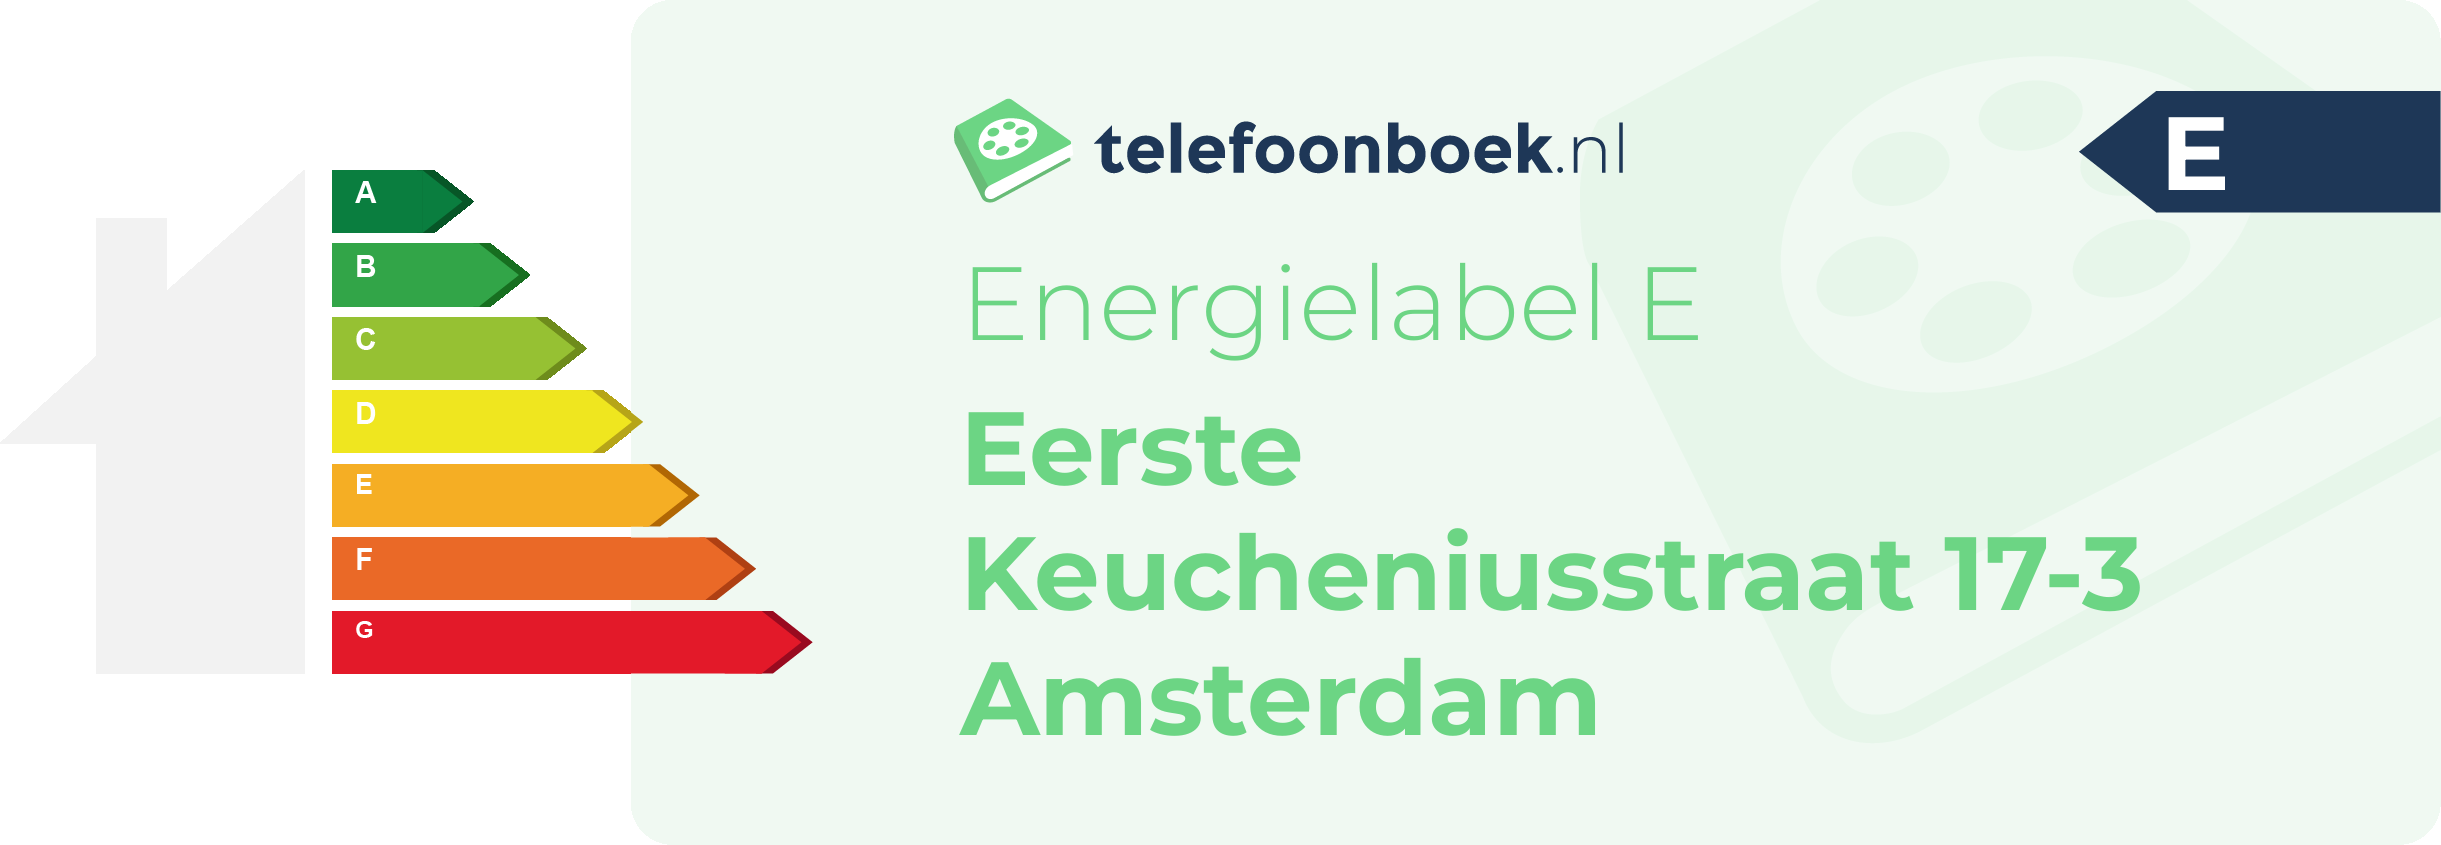 Energielabel Eerste Keucheniusstraat 17-3 Amsterdam